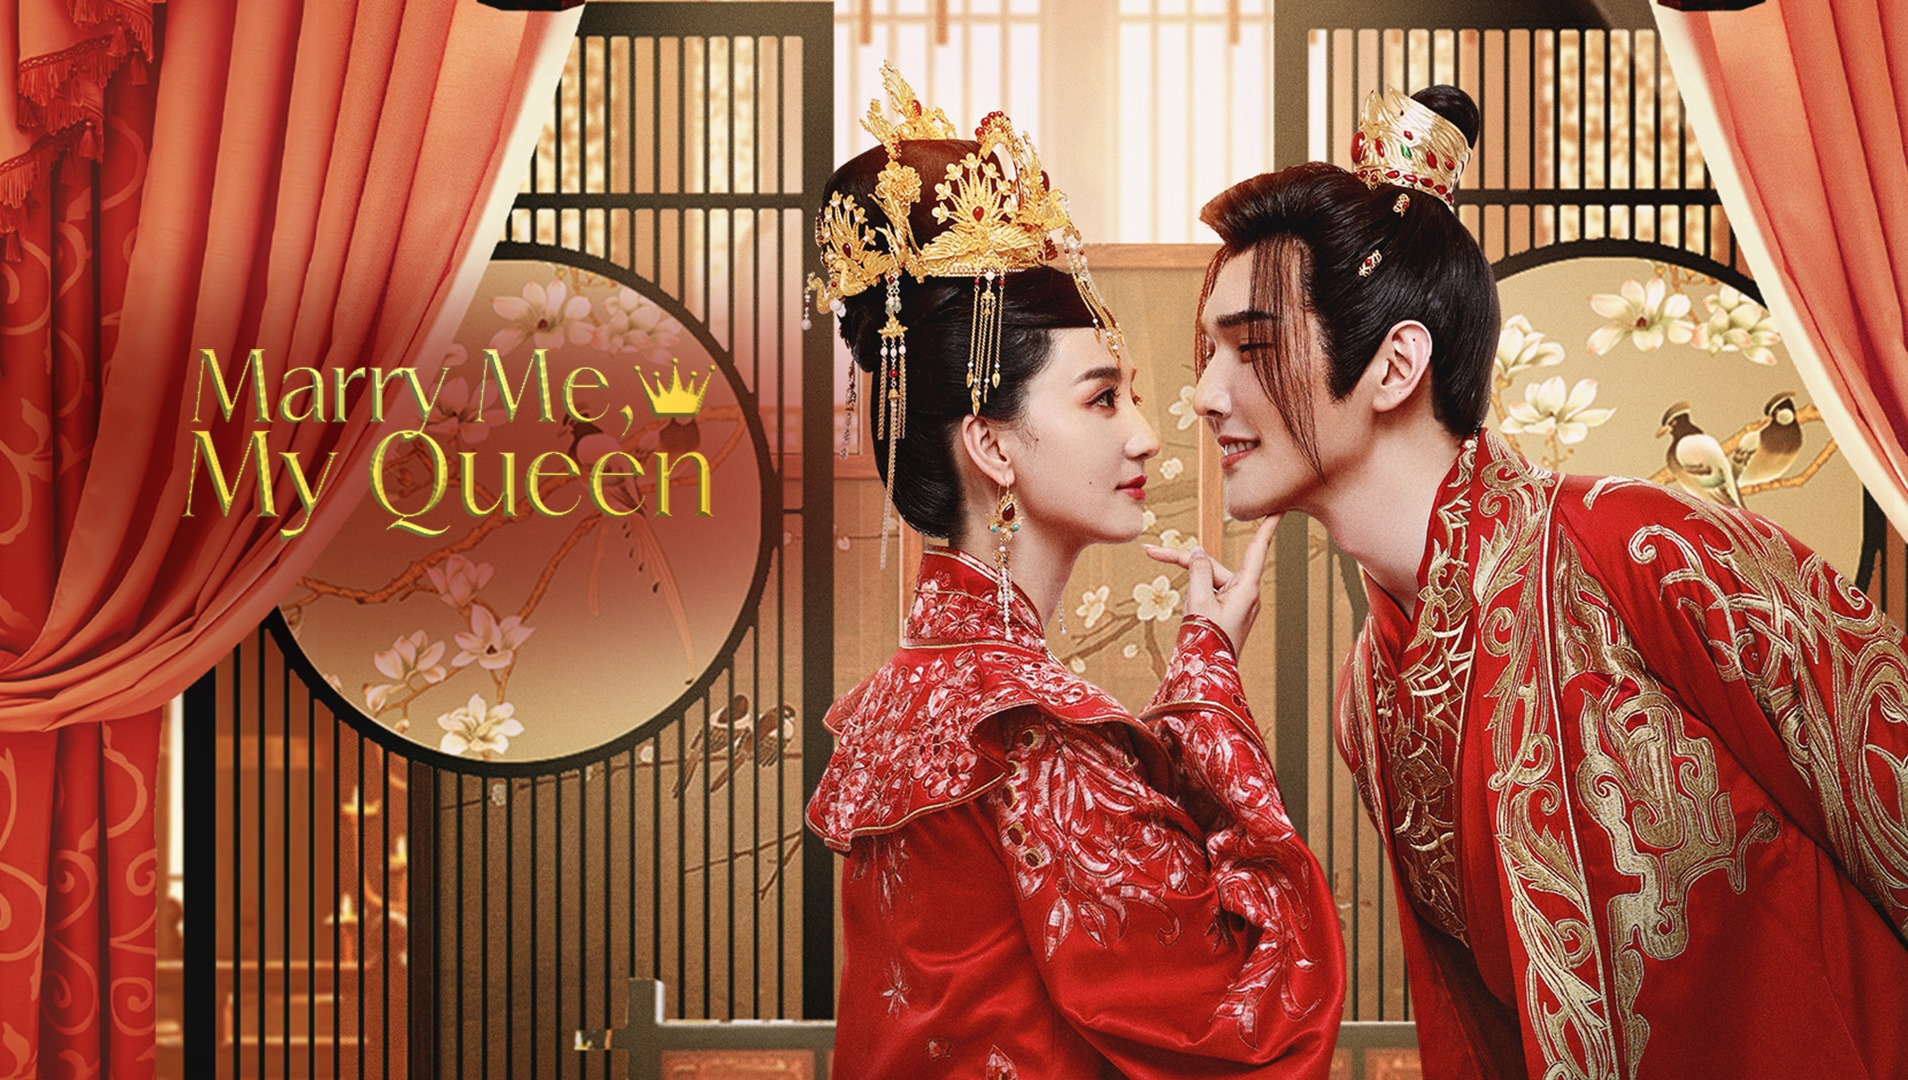 EP1: My Queen - Watch HD Video Online - WeTV